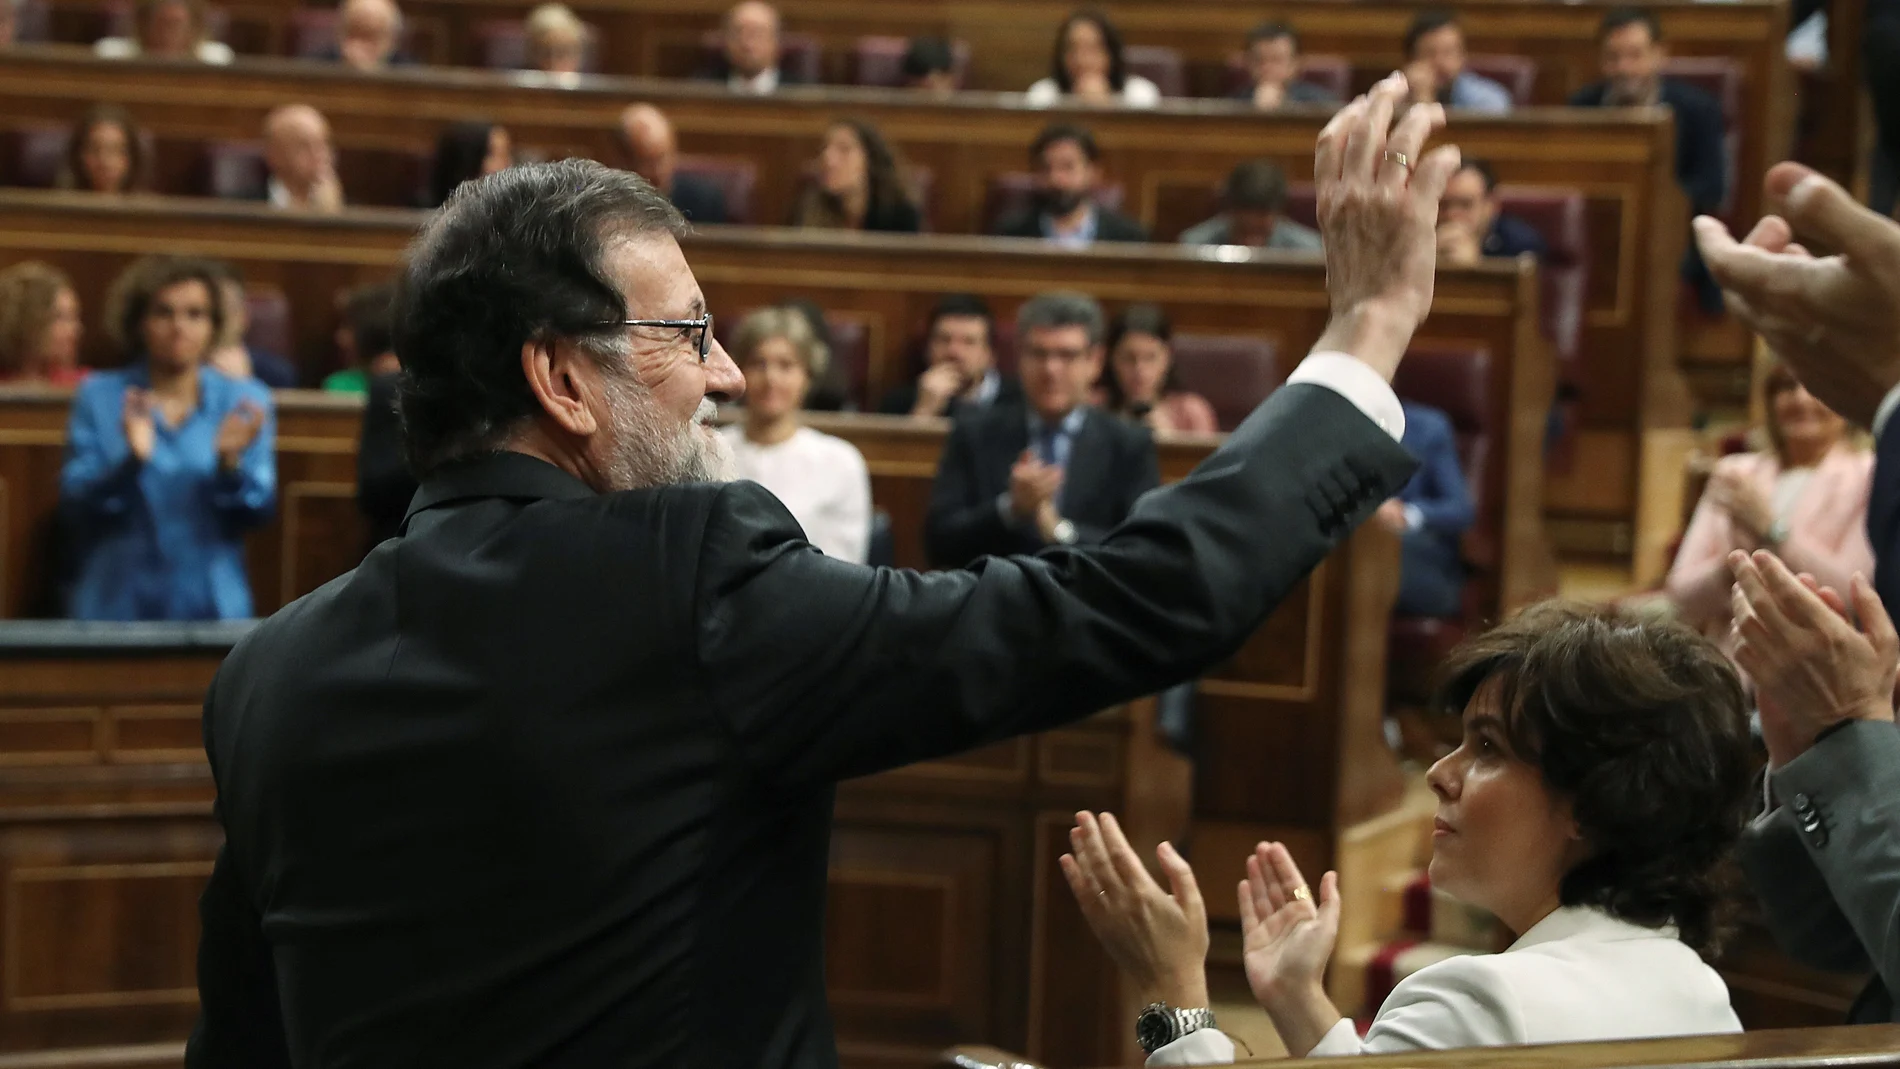 El presidente del gobierno Mariano Rajoy, saluda tras intervenir ante el pleno del hemiciclo del Congreso en el debate de la moción de censura presentada por el PSOE.